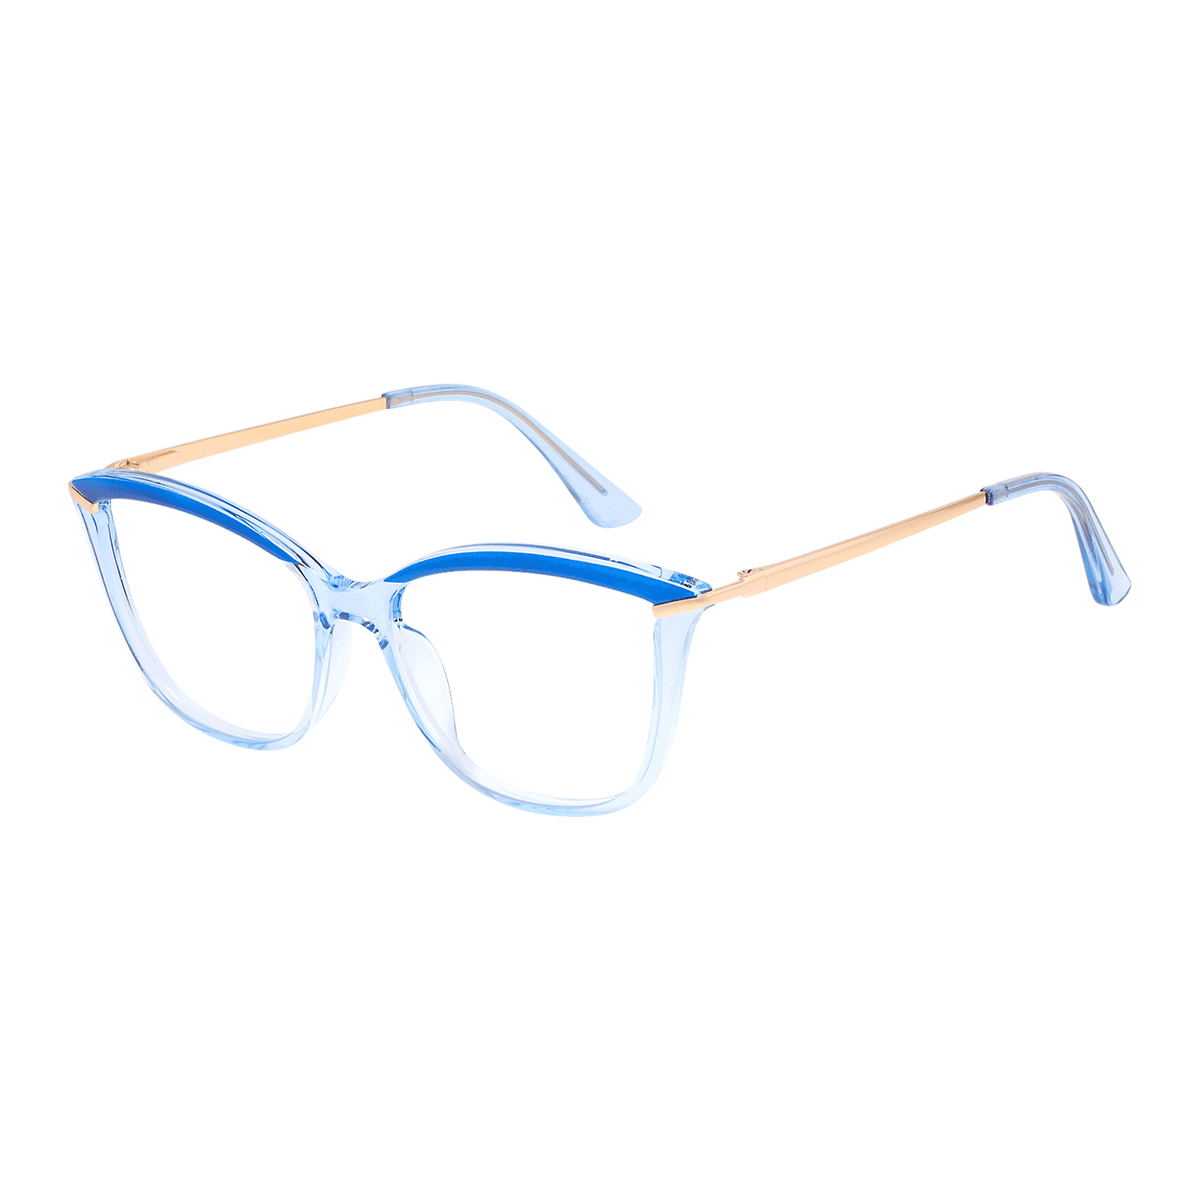 Dai - Cat-eye Blue Reading Glasses for Women